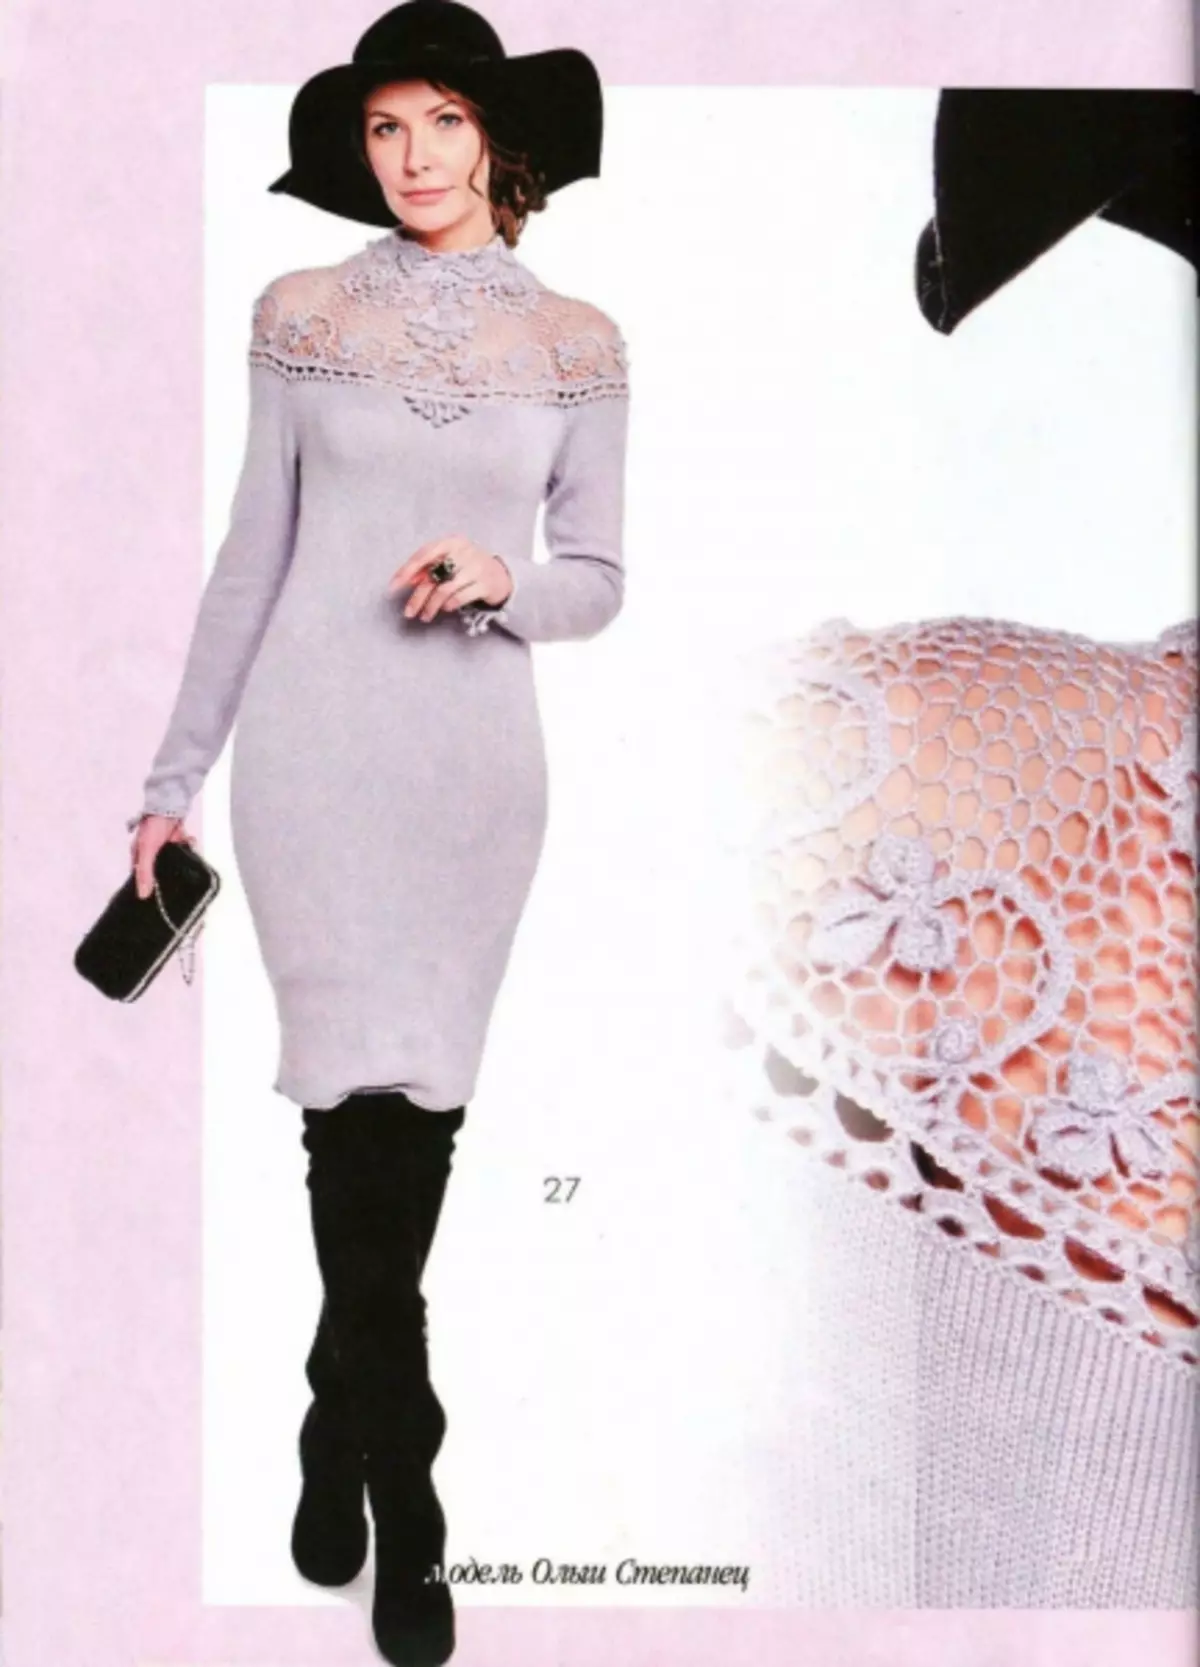 Revista Moda 616 - 2019. Models elegants